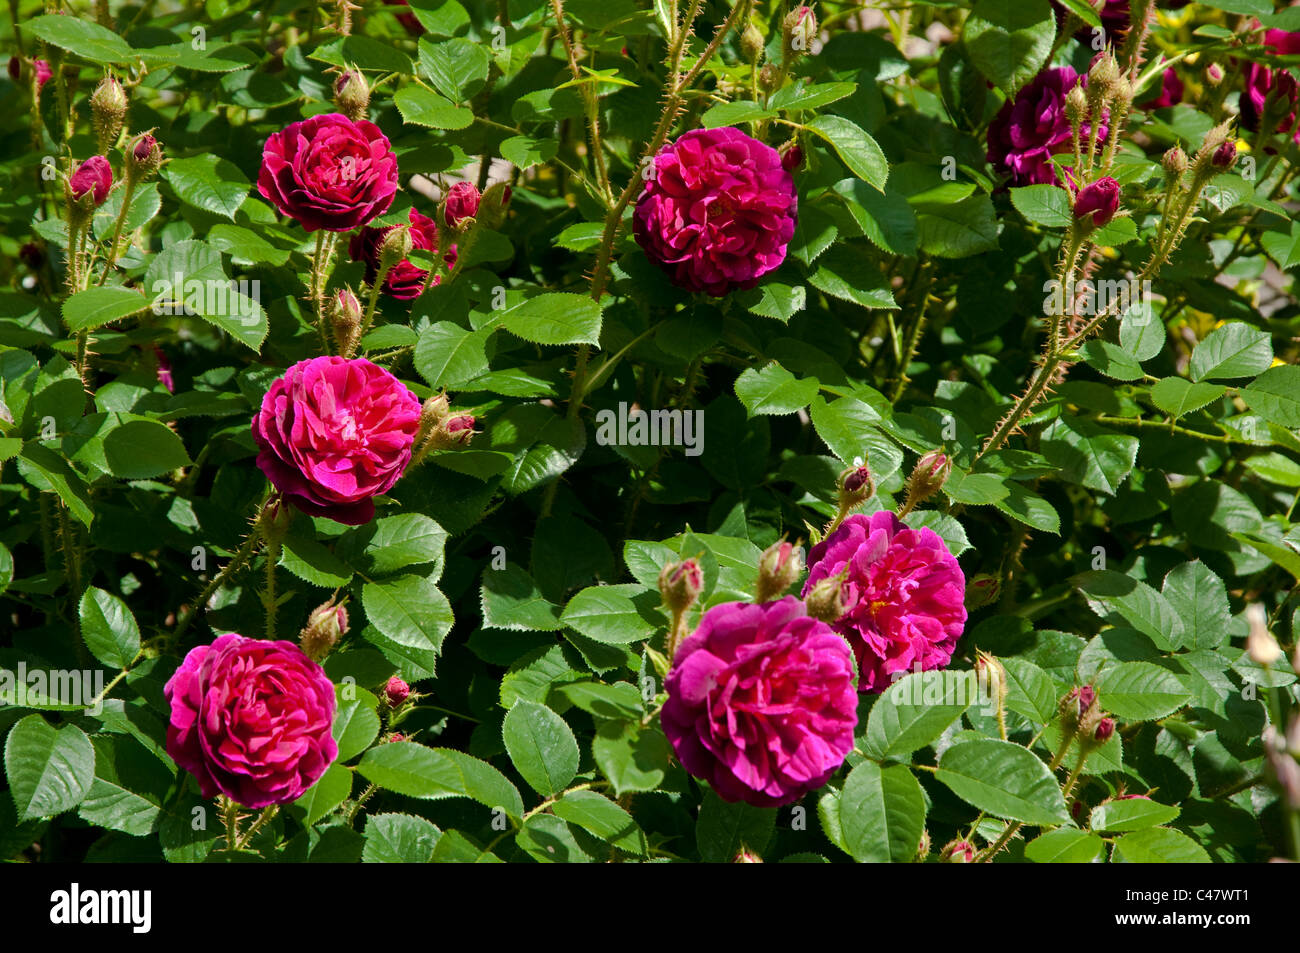 Rosa Othello (Auslo) eine helle Cerise gefärbt rose - zeichnet sich durch seine Stiele mit stacheligen Dornen. Stockfoto